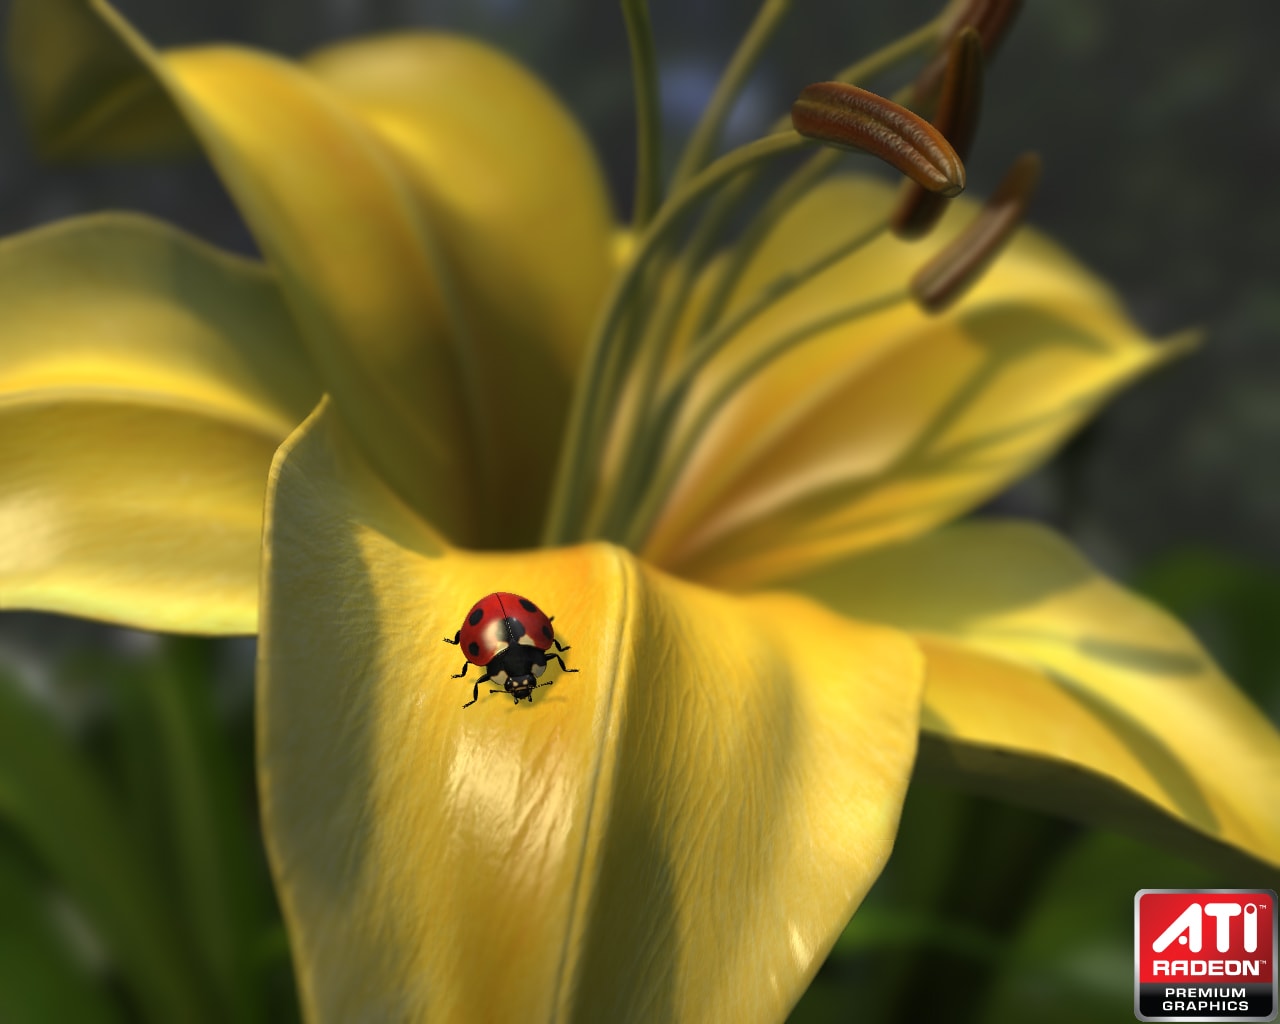 Radeon™ HD 5000 Series Graphics Real-Time Demos - Ladybug demo